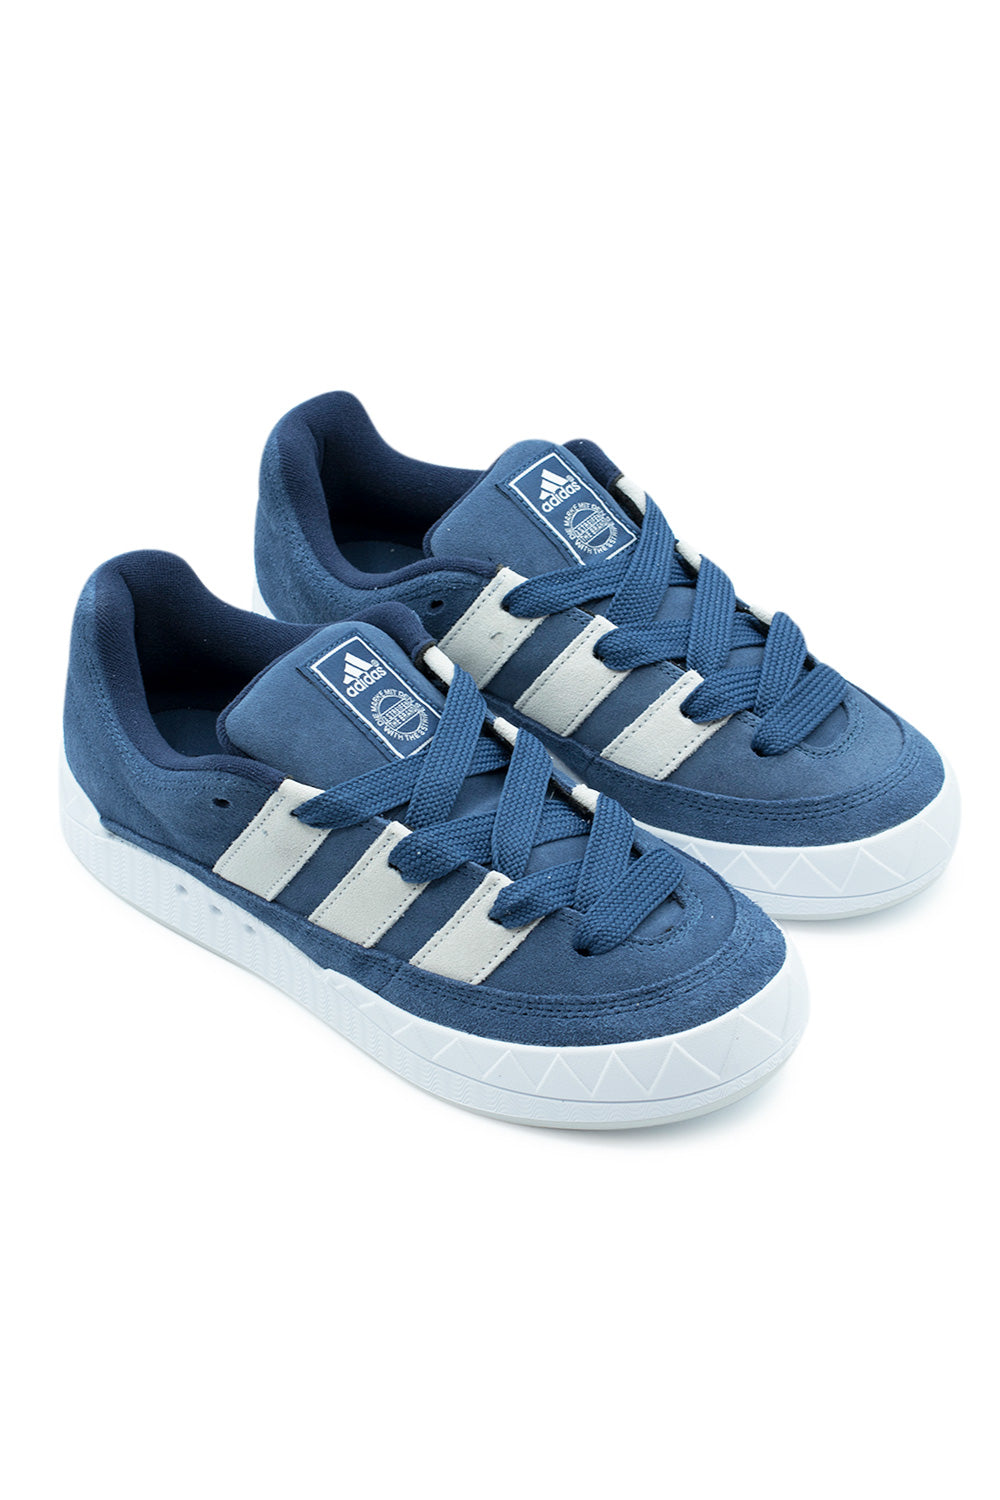 Adidas Adimatic Shoe Night Marine / Crystal White / Night Indigo - BONKERS